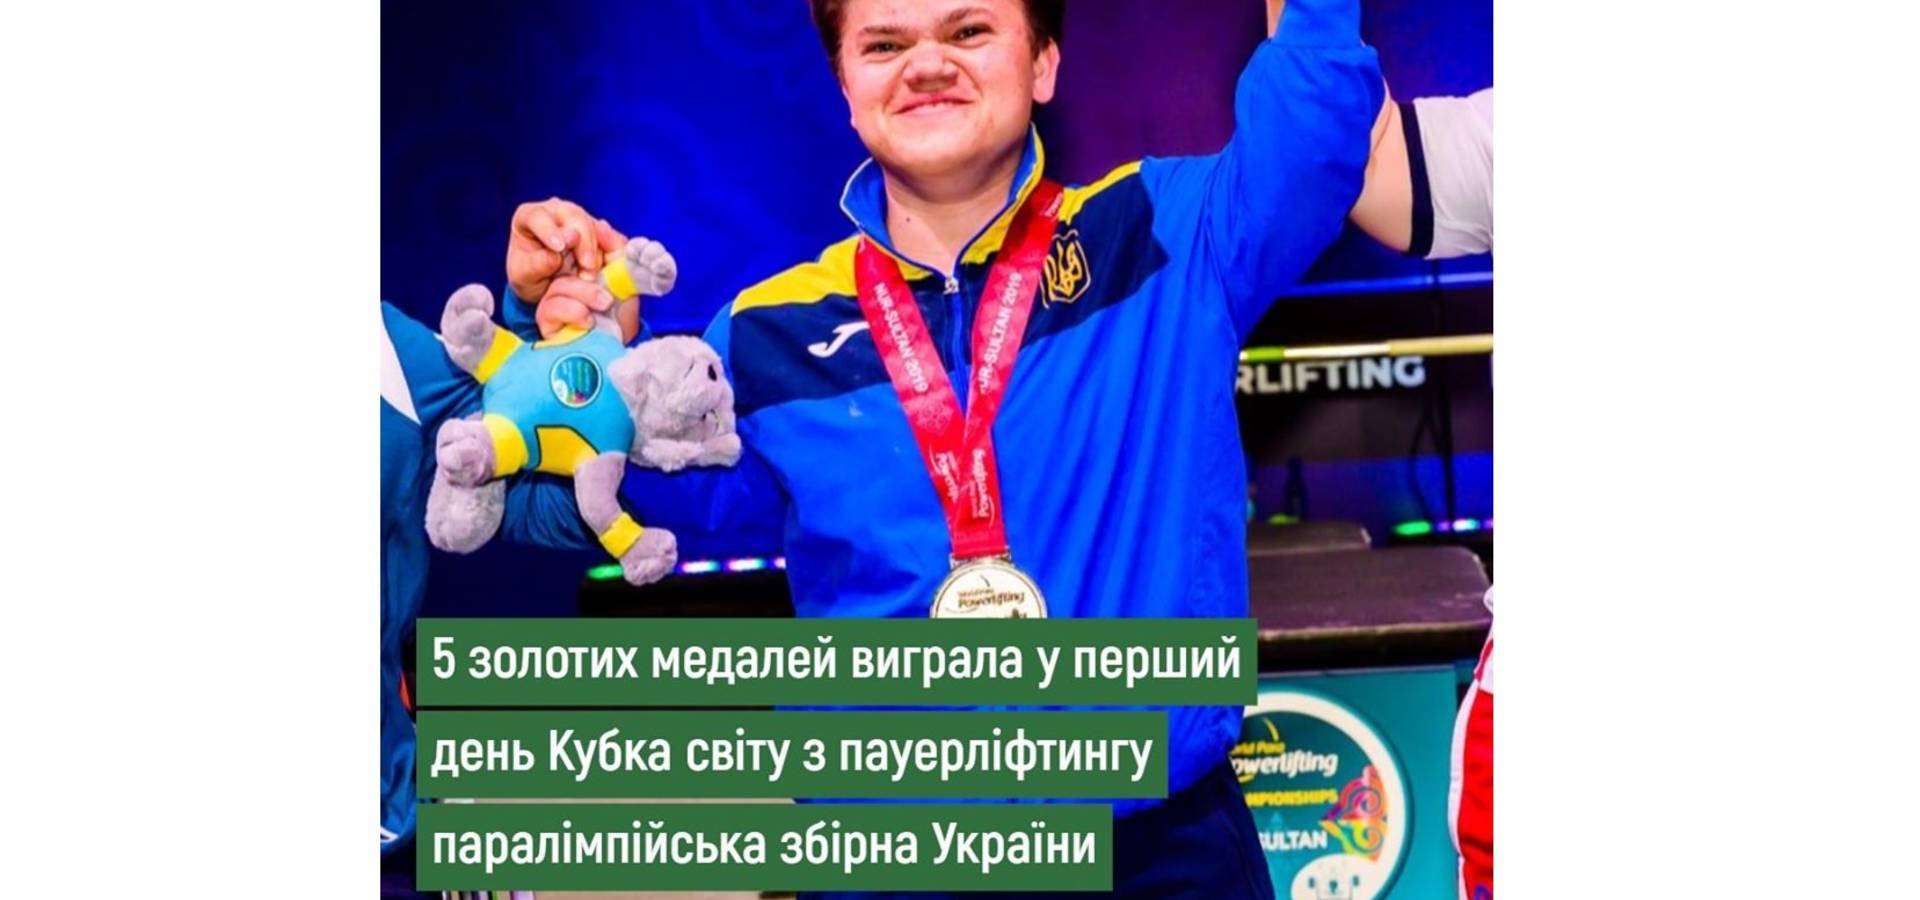 Хмільничанка Мар'яна Шевчук підкорила чемпіонат світу в Манчестері